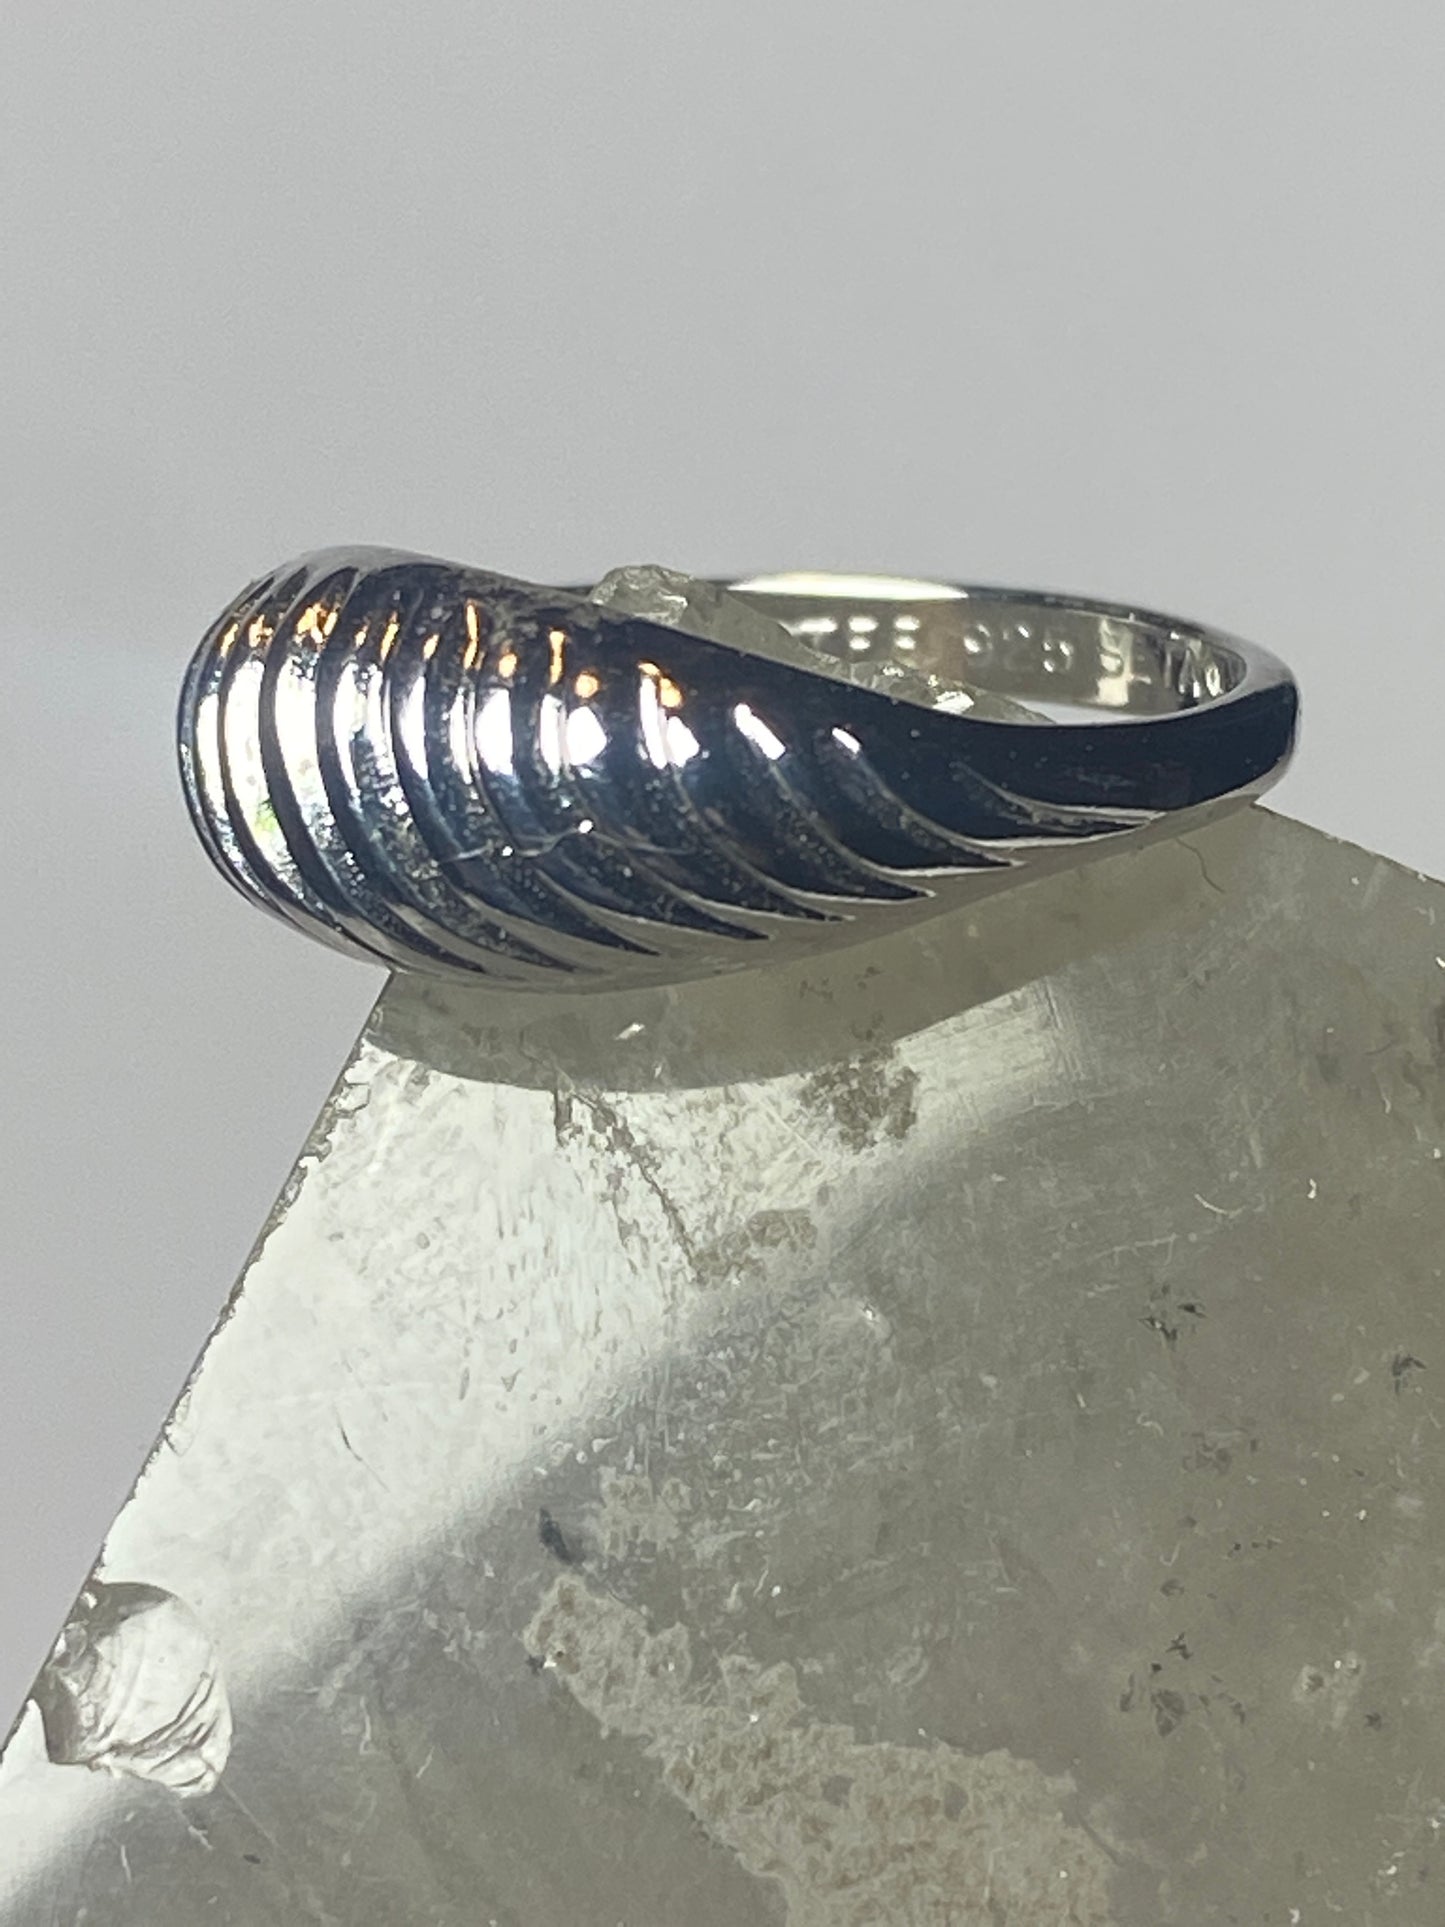 Shrimp design band slender pinky ring sterling silver women girls